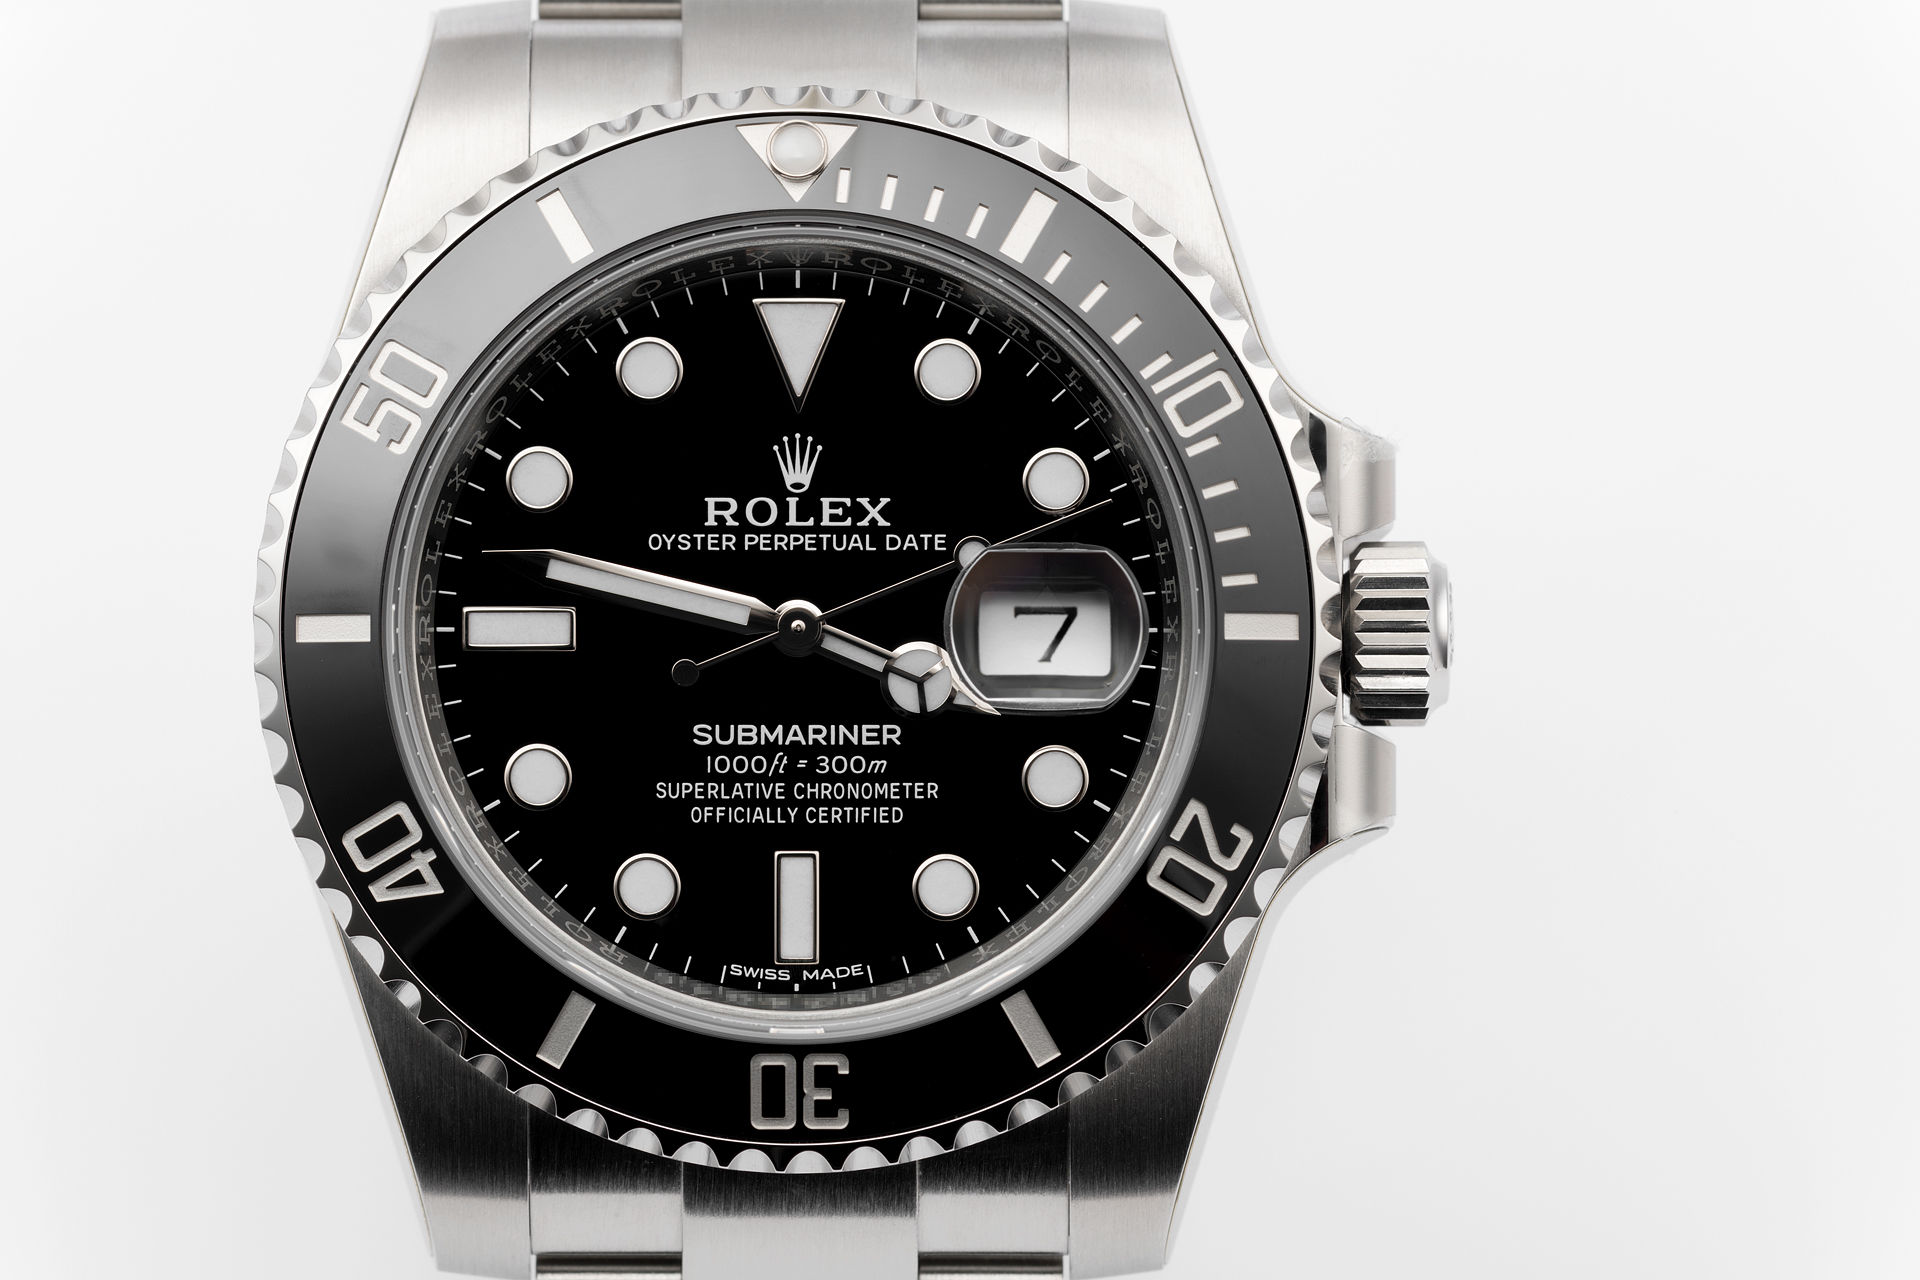 ref 116610LN | Brand New '5 year Warranty' | Rolex Submariner Date